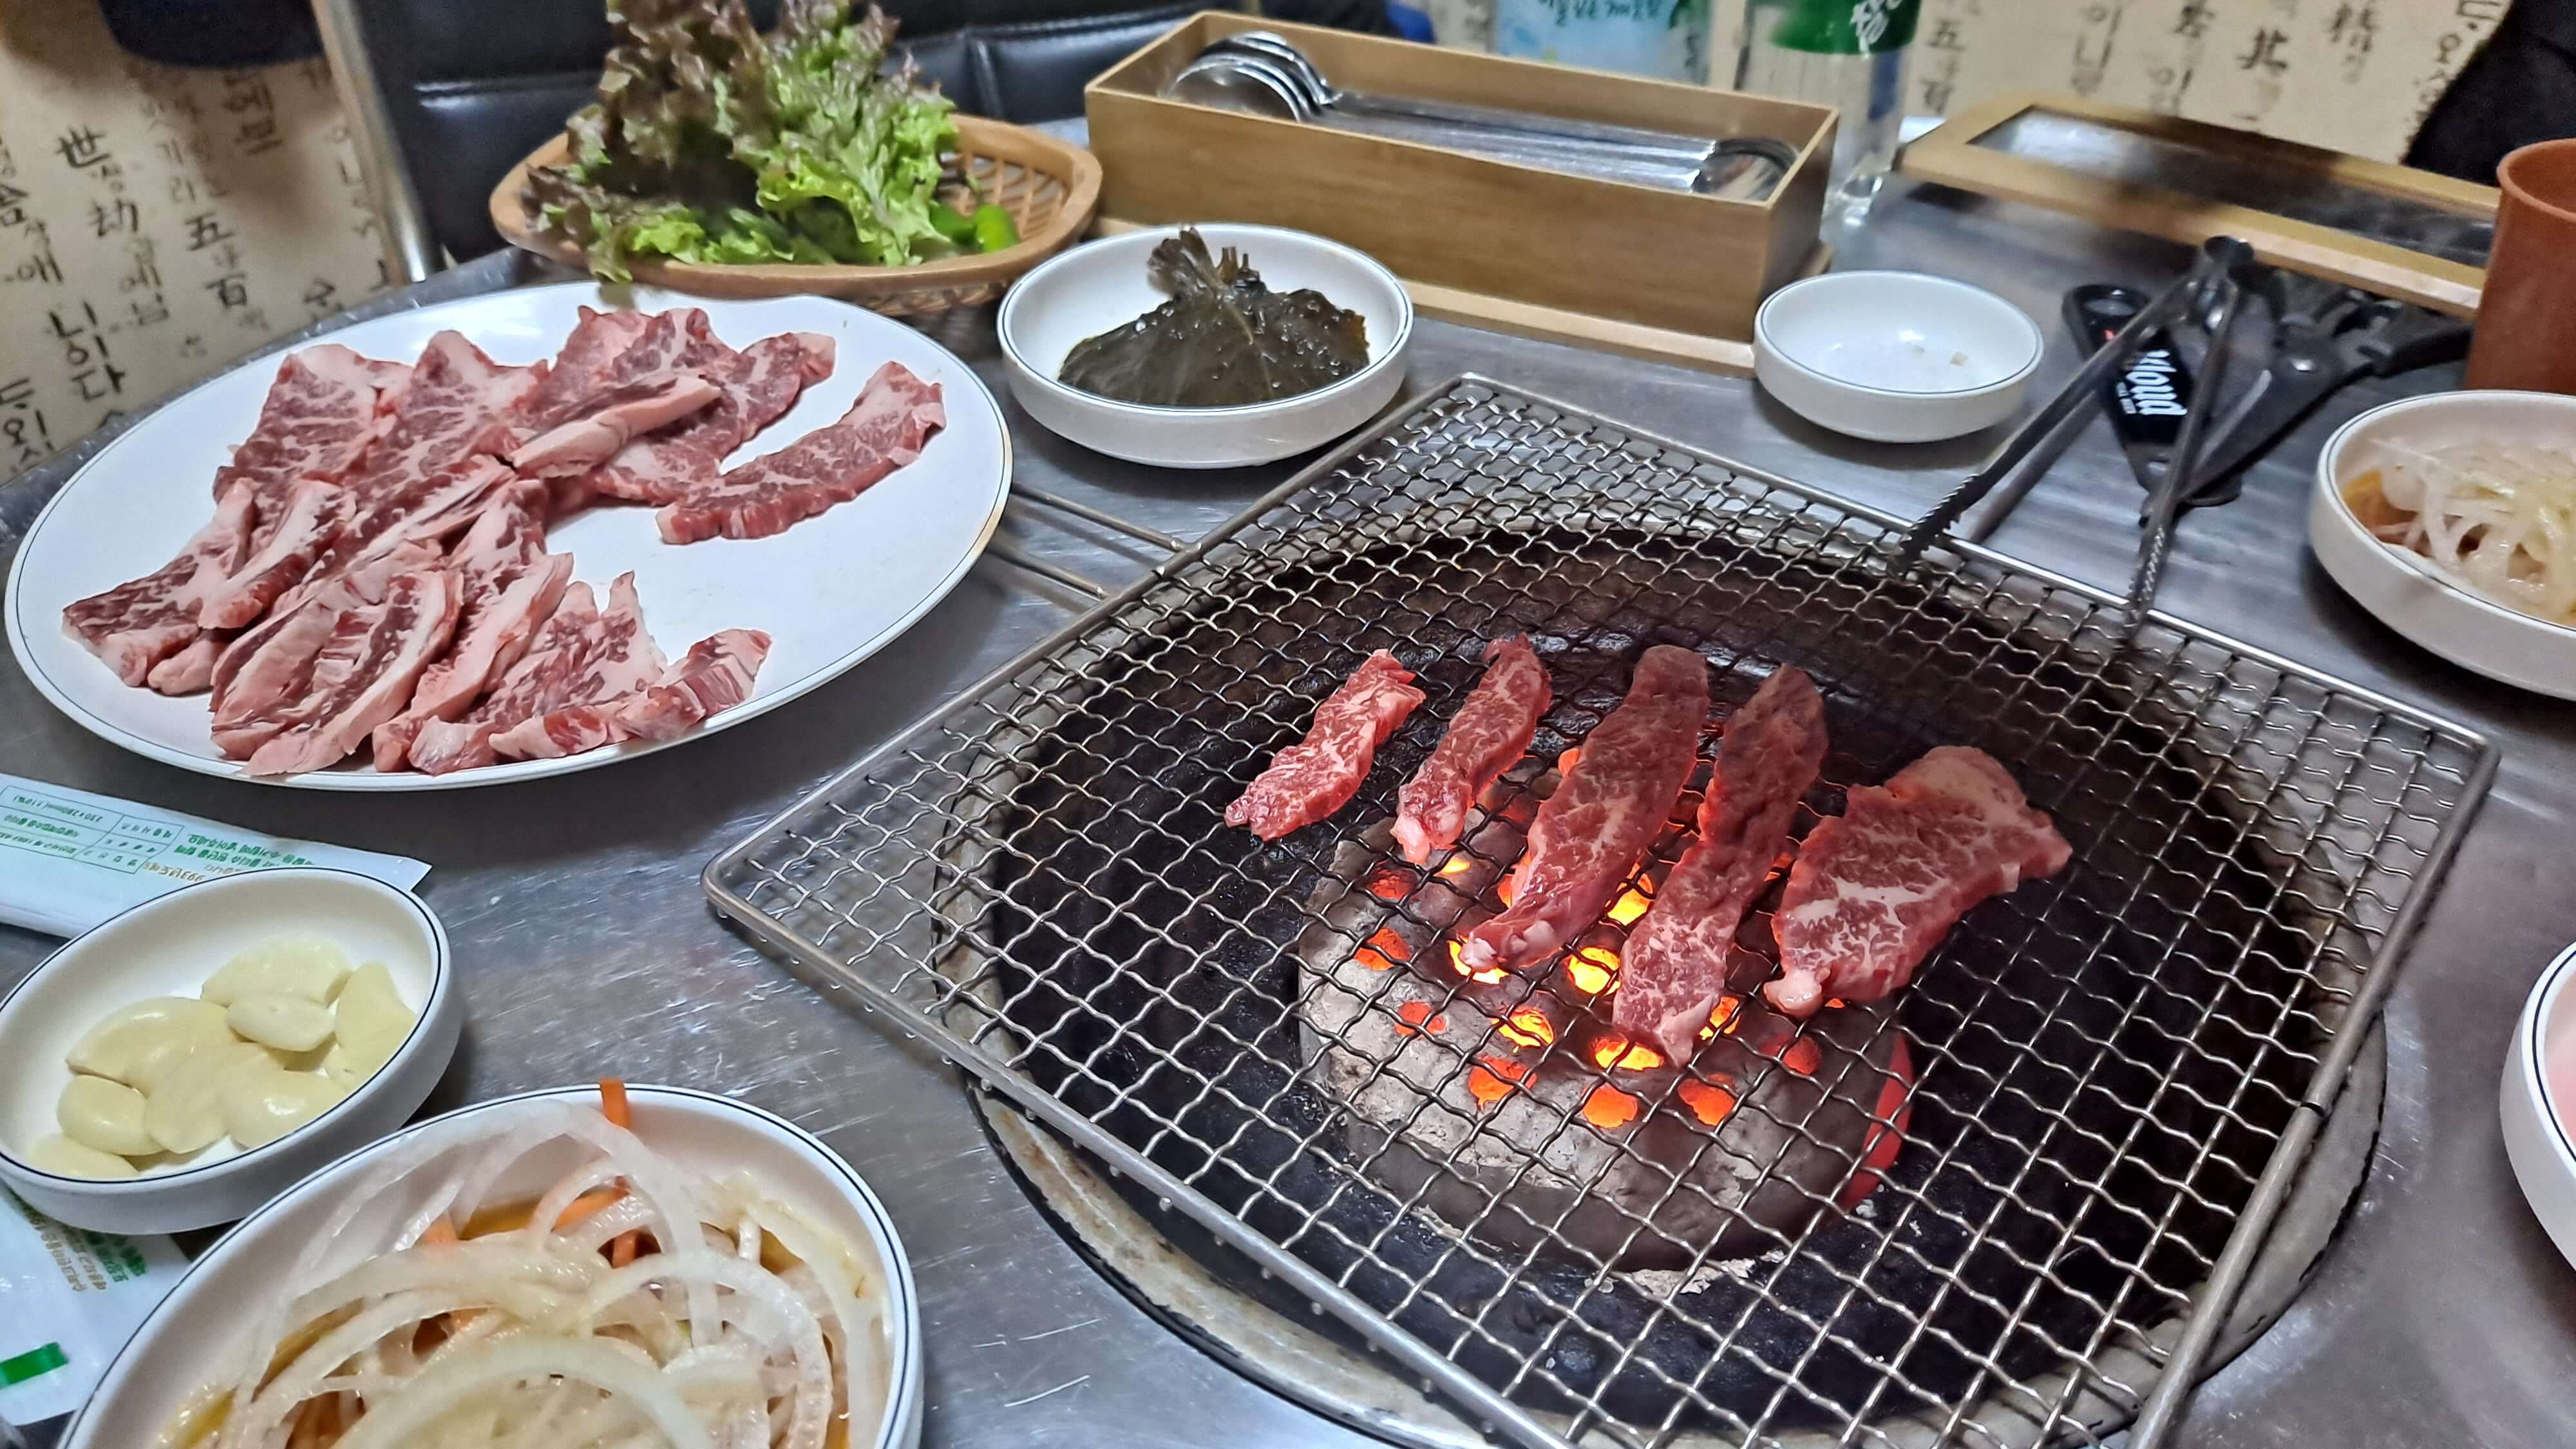 강원도 하이원 리조트 정문 입구쪽에 있는 시내 음식점에서 소고기를 시켜서 연탄불에 굽는 모습 촬영 이미지